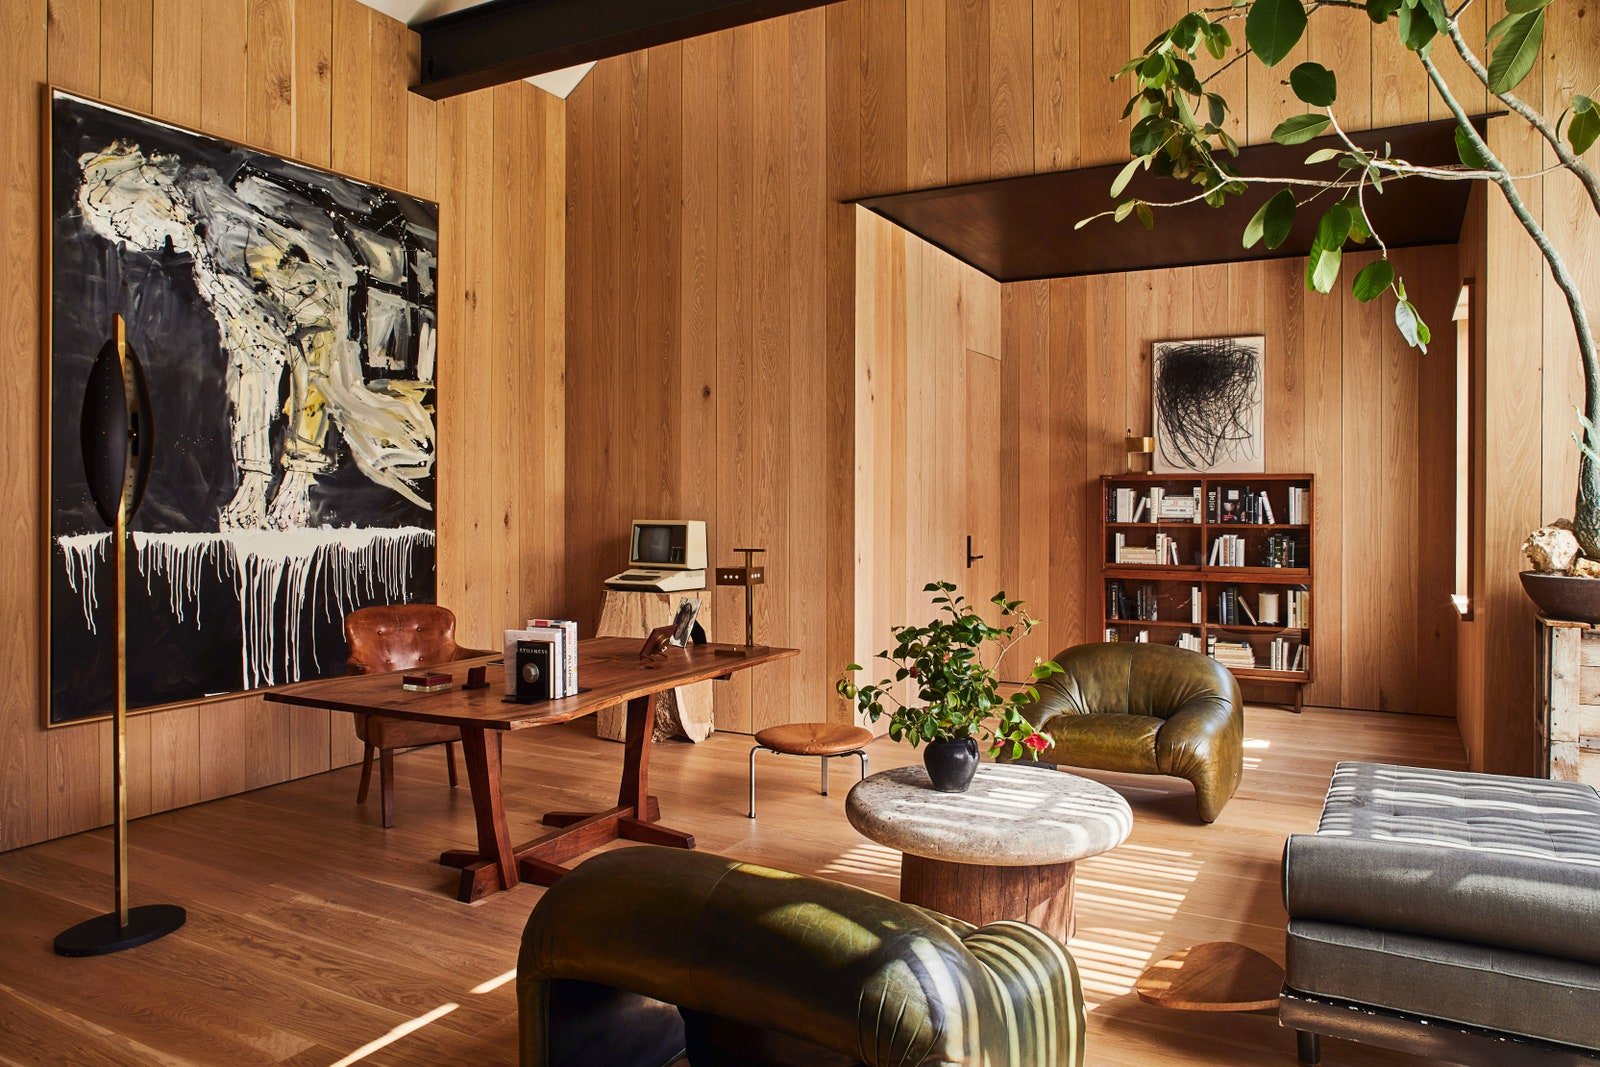 ربما تحتوي الصورة على Wood Living Room Room Inoors Furniture خشب صلب كرسي أريكة وطاولة أرضية وخشب رقائقي